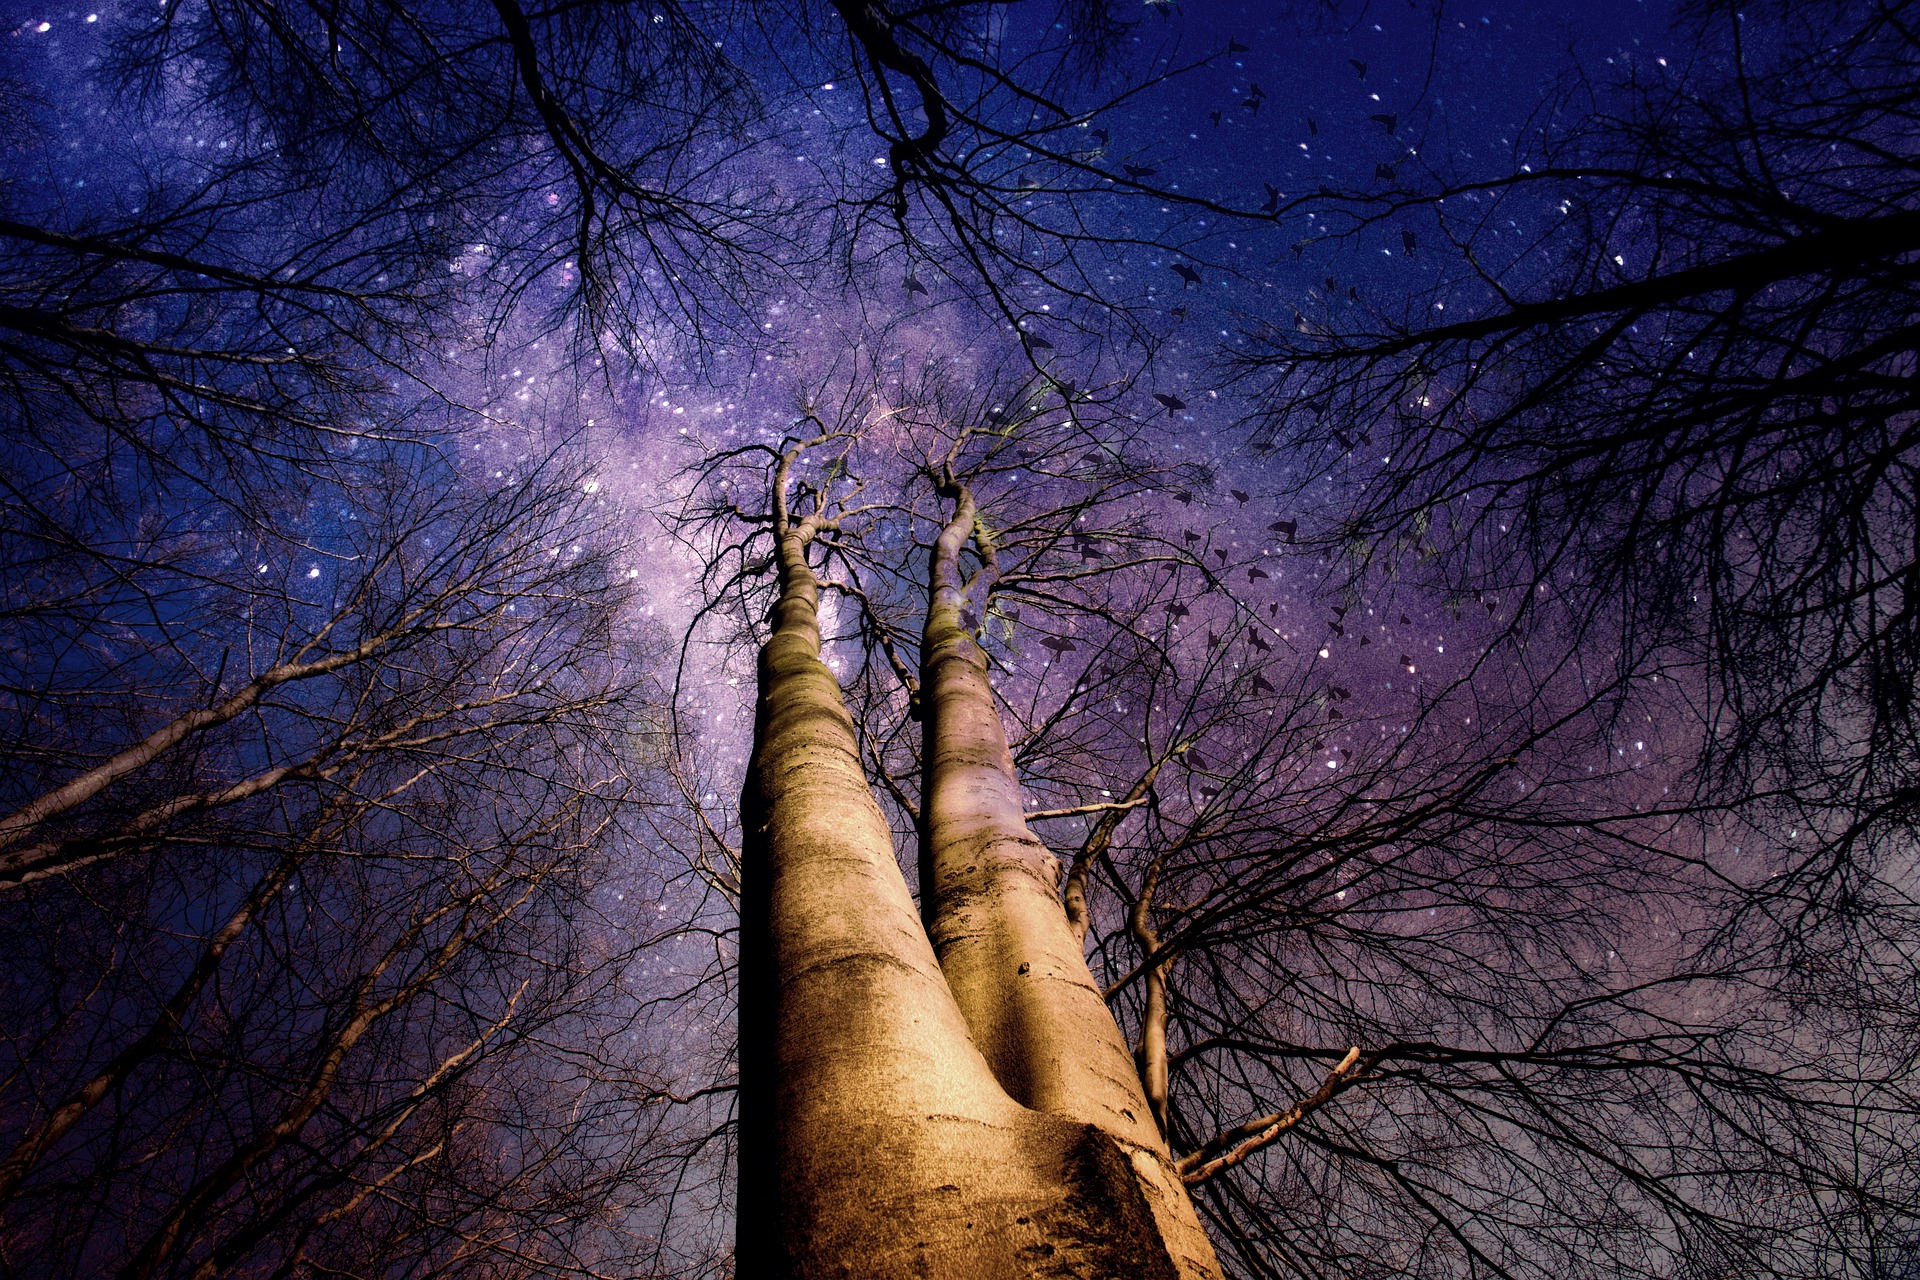 Starry night sky through trees.